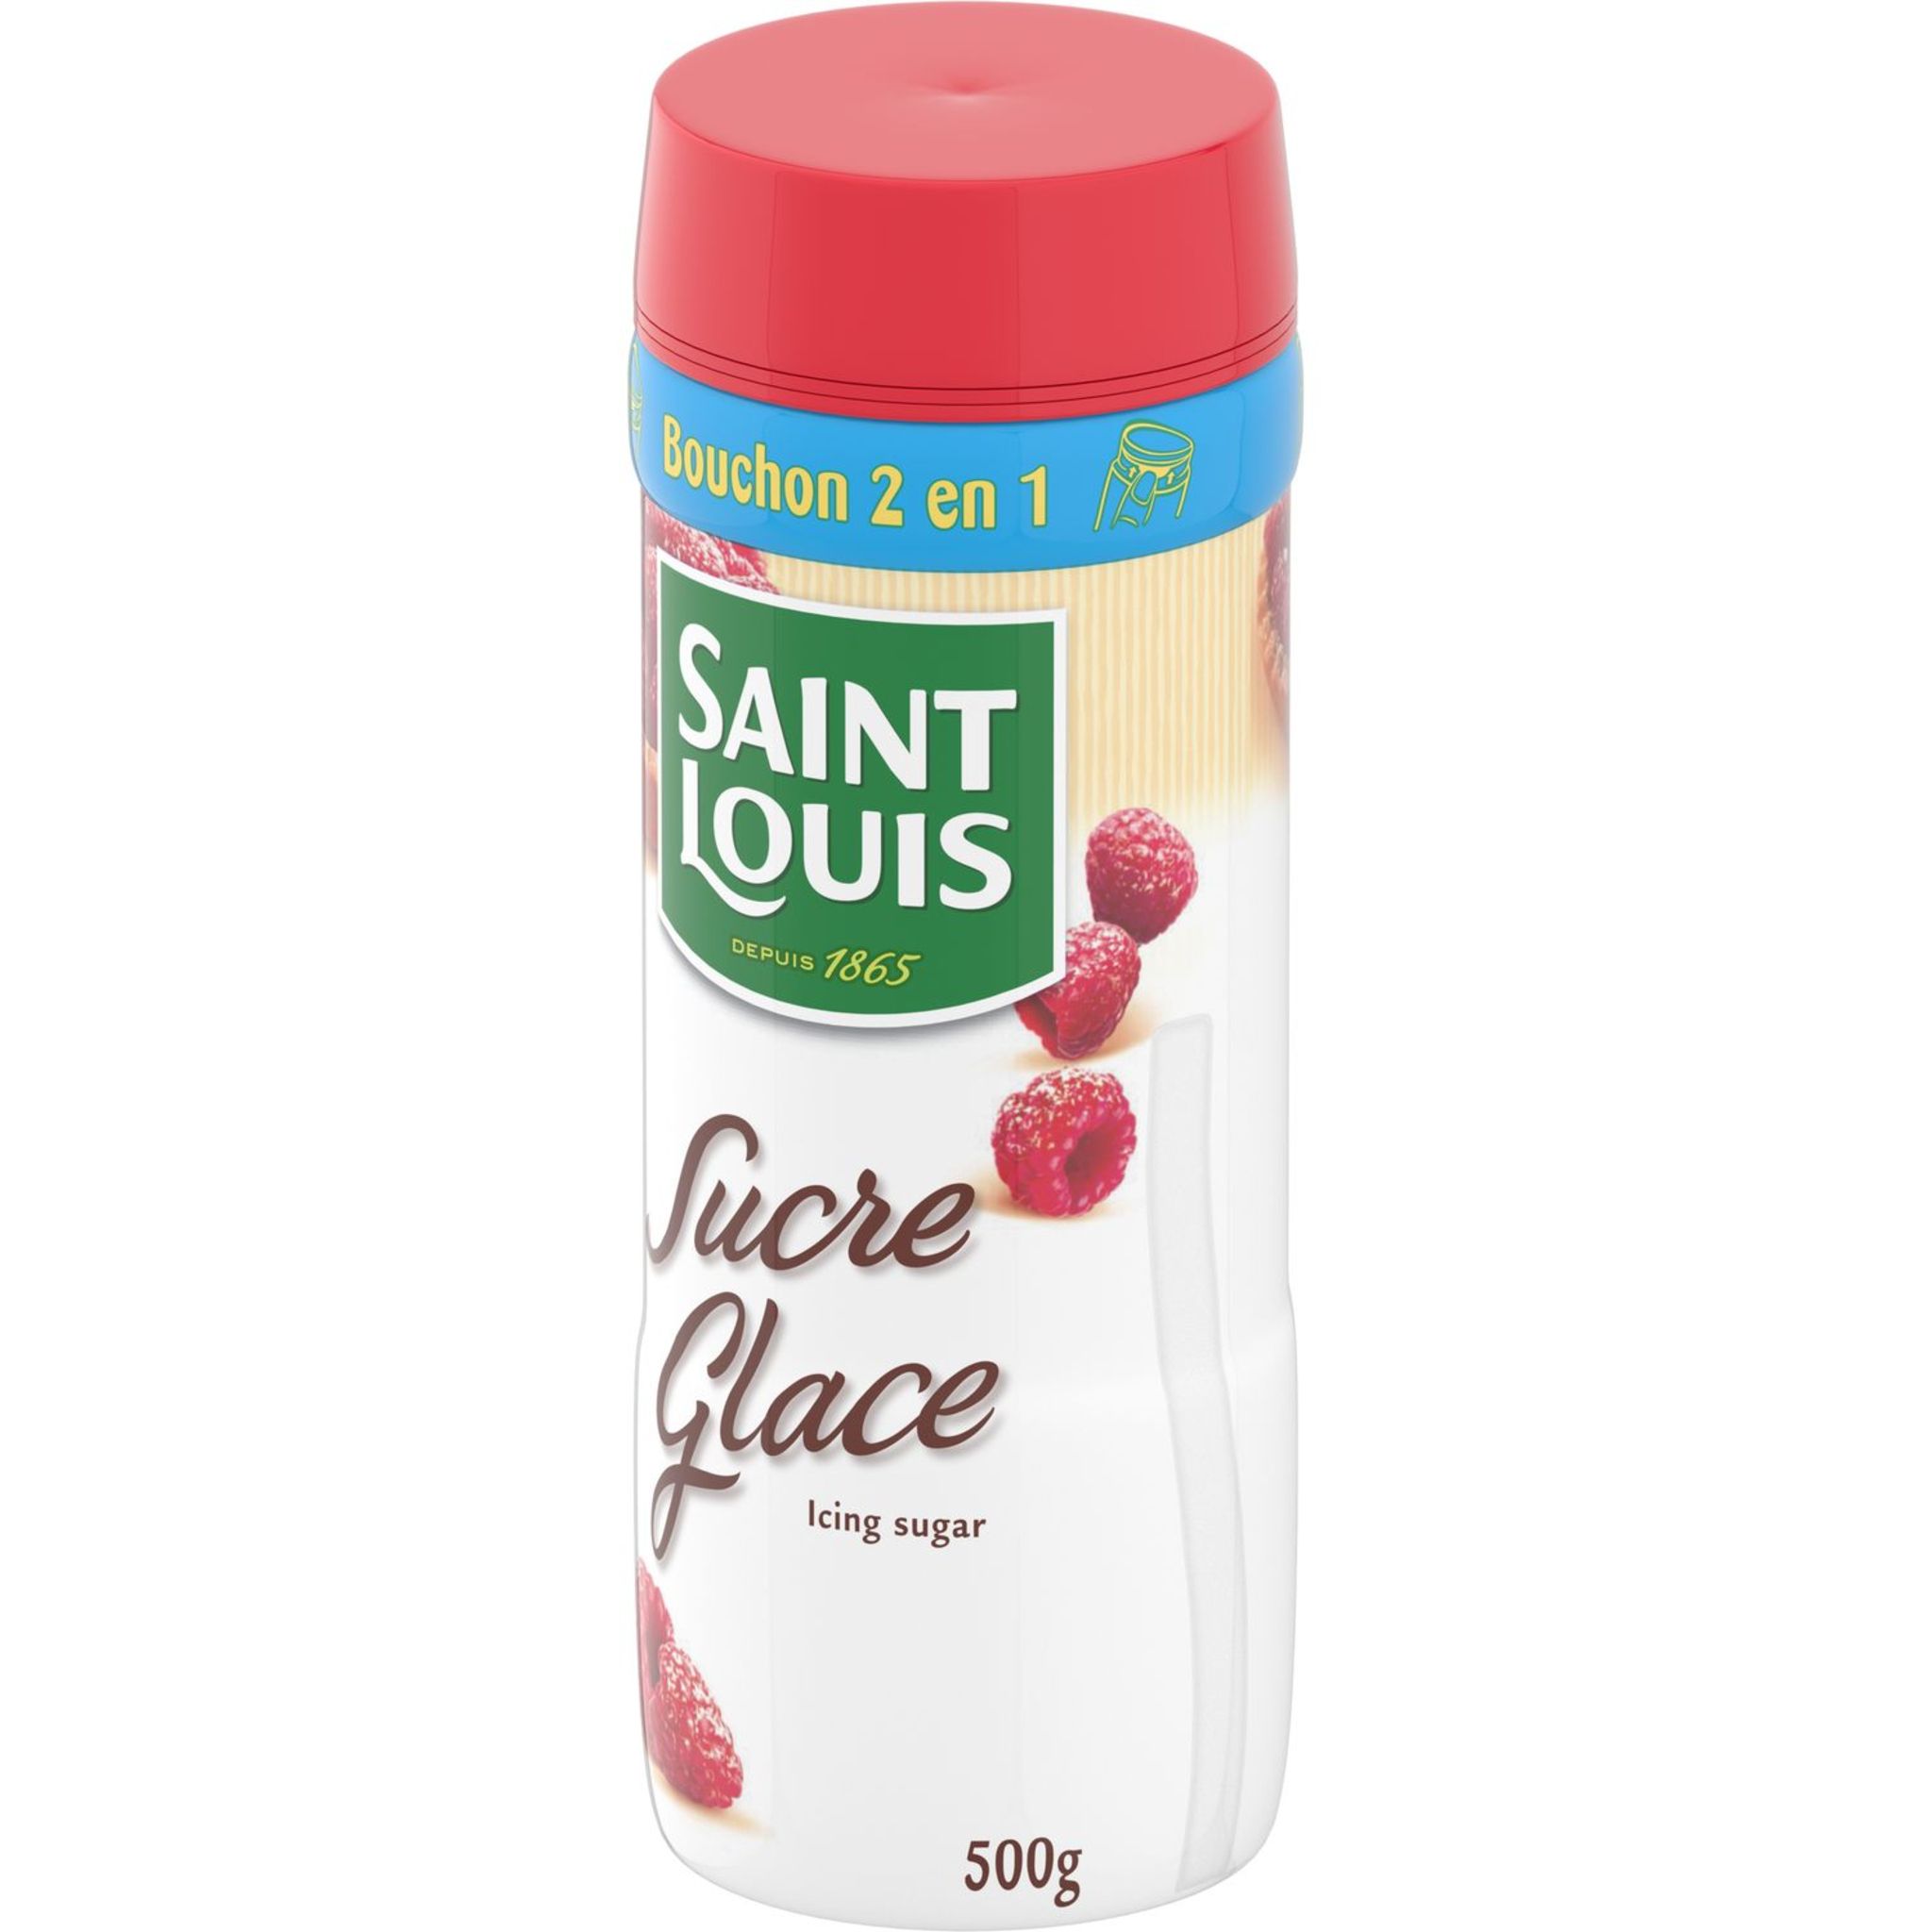 Sucre glace 500g - Saint Louis Sucre